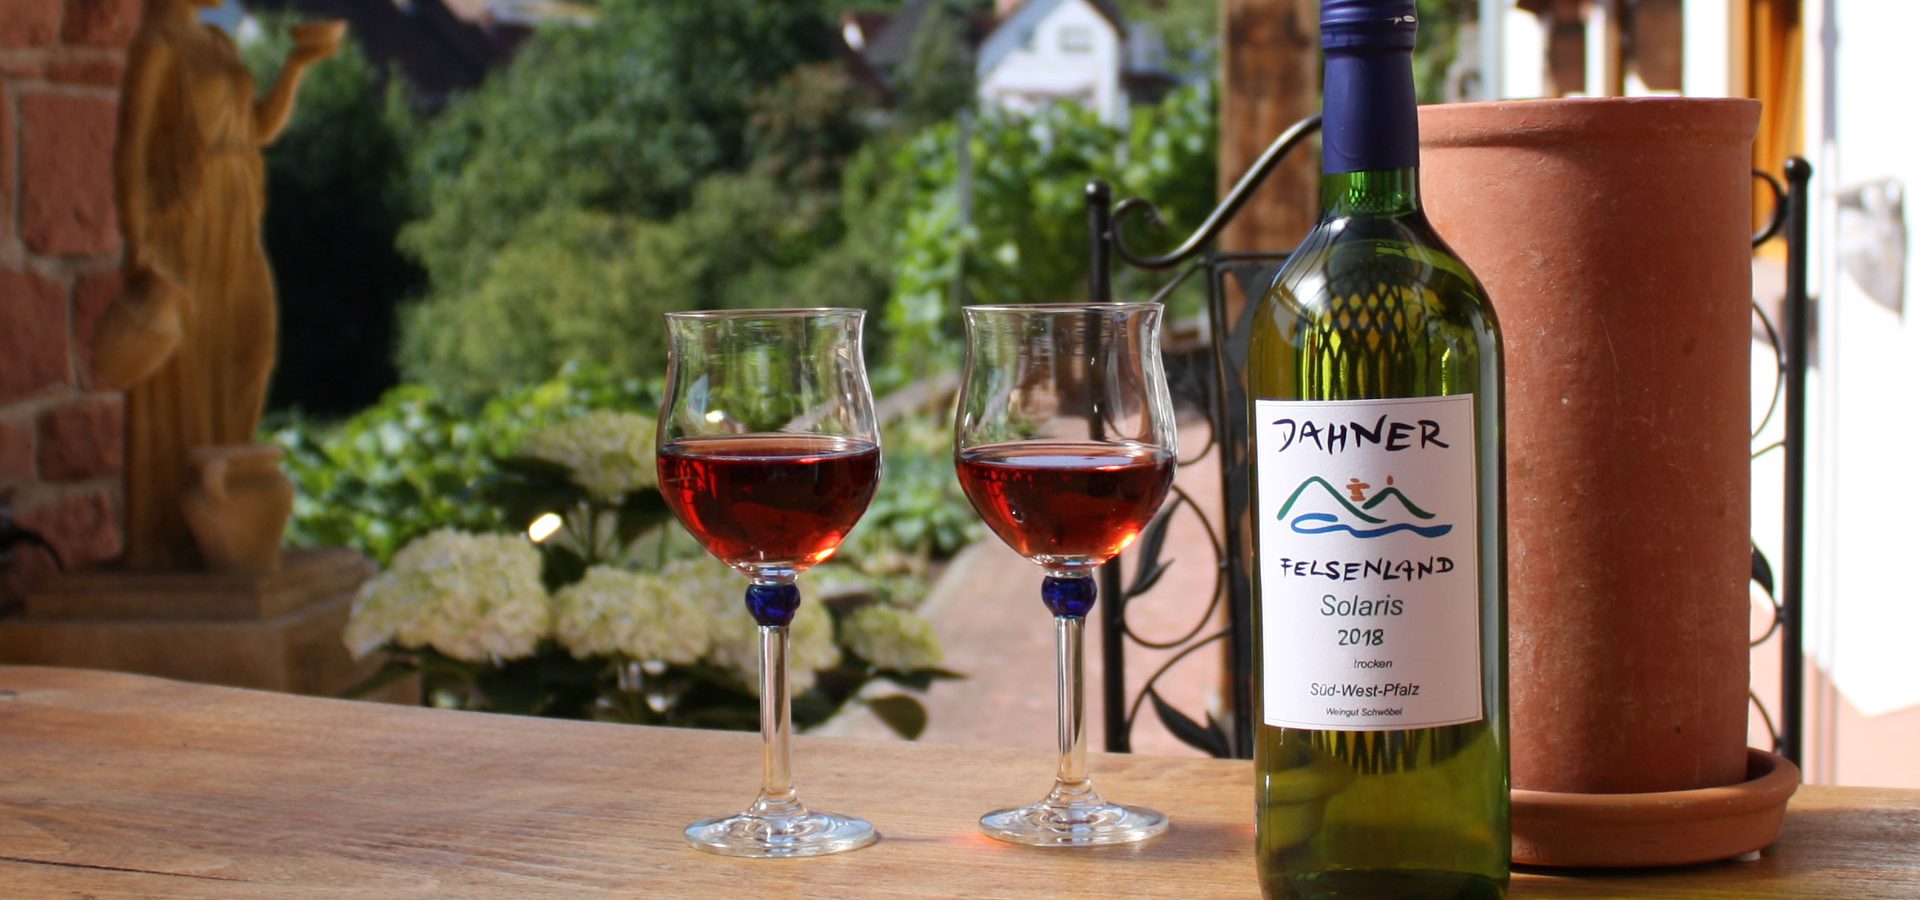 Terrasse mit Weingläsern